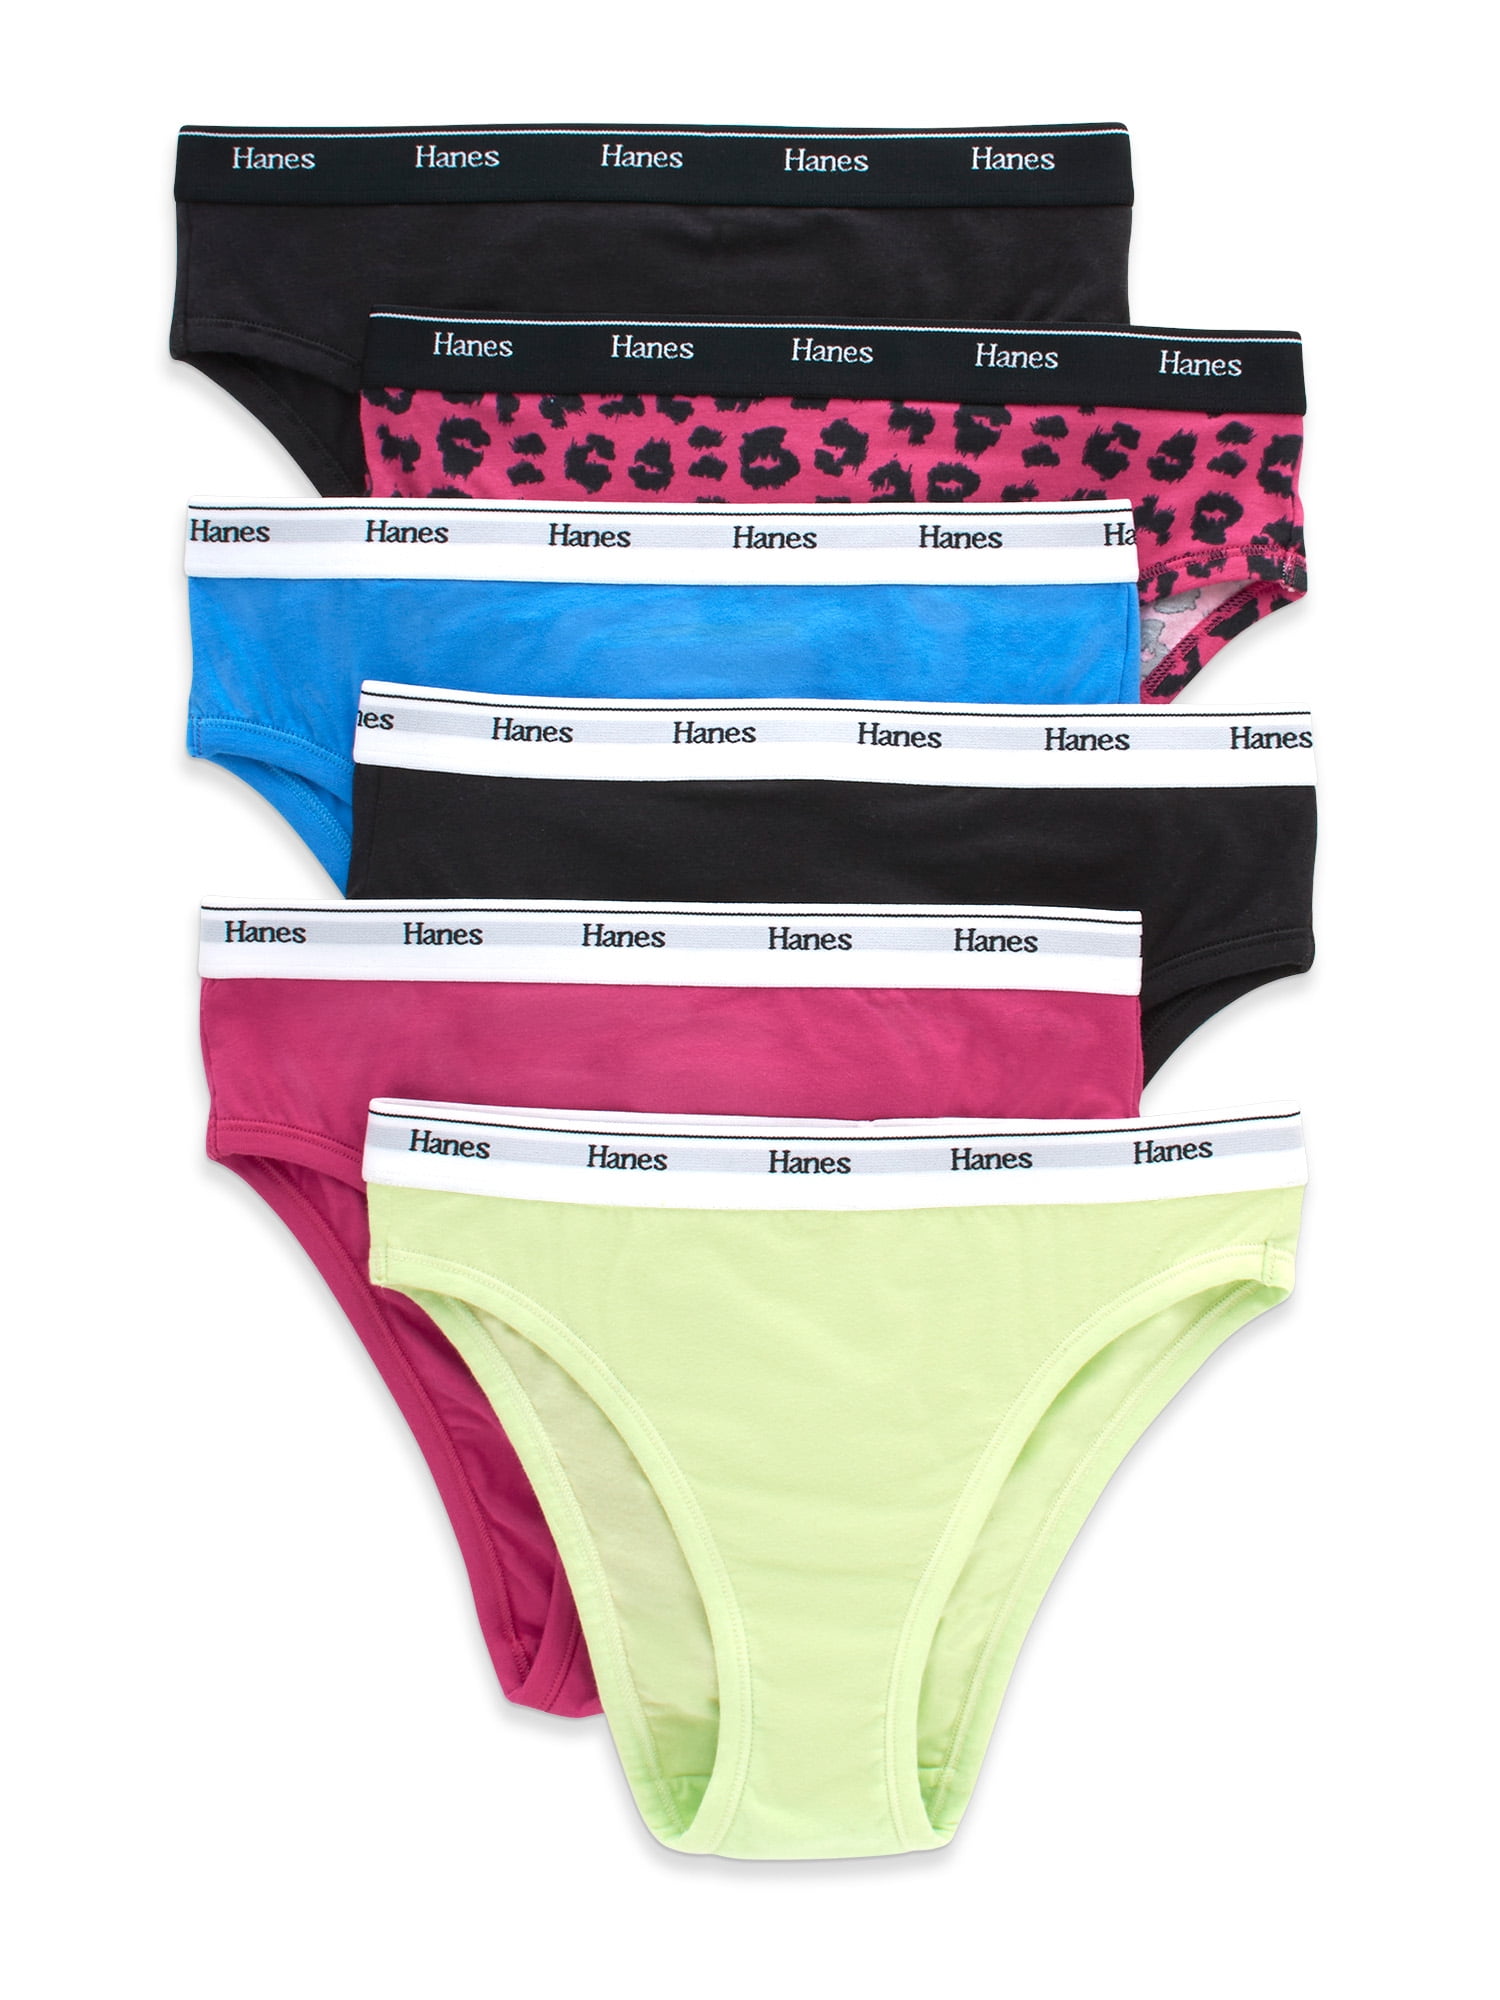 Hanes Originals Women's Hipster Underwear, Breathable Cotton Stretch,  6-Pack 